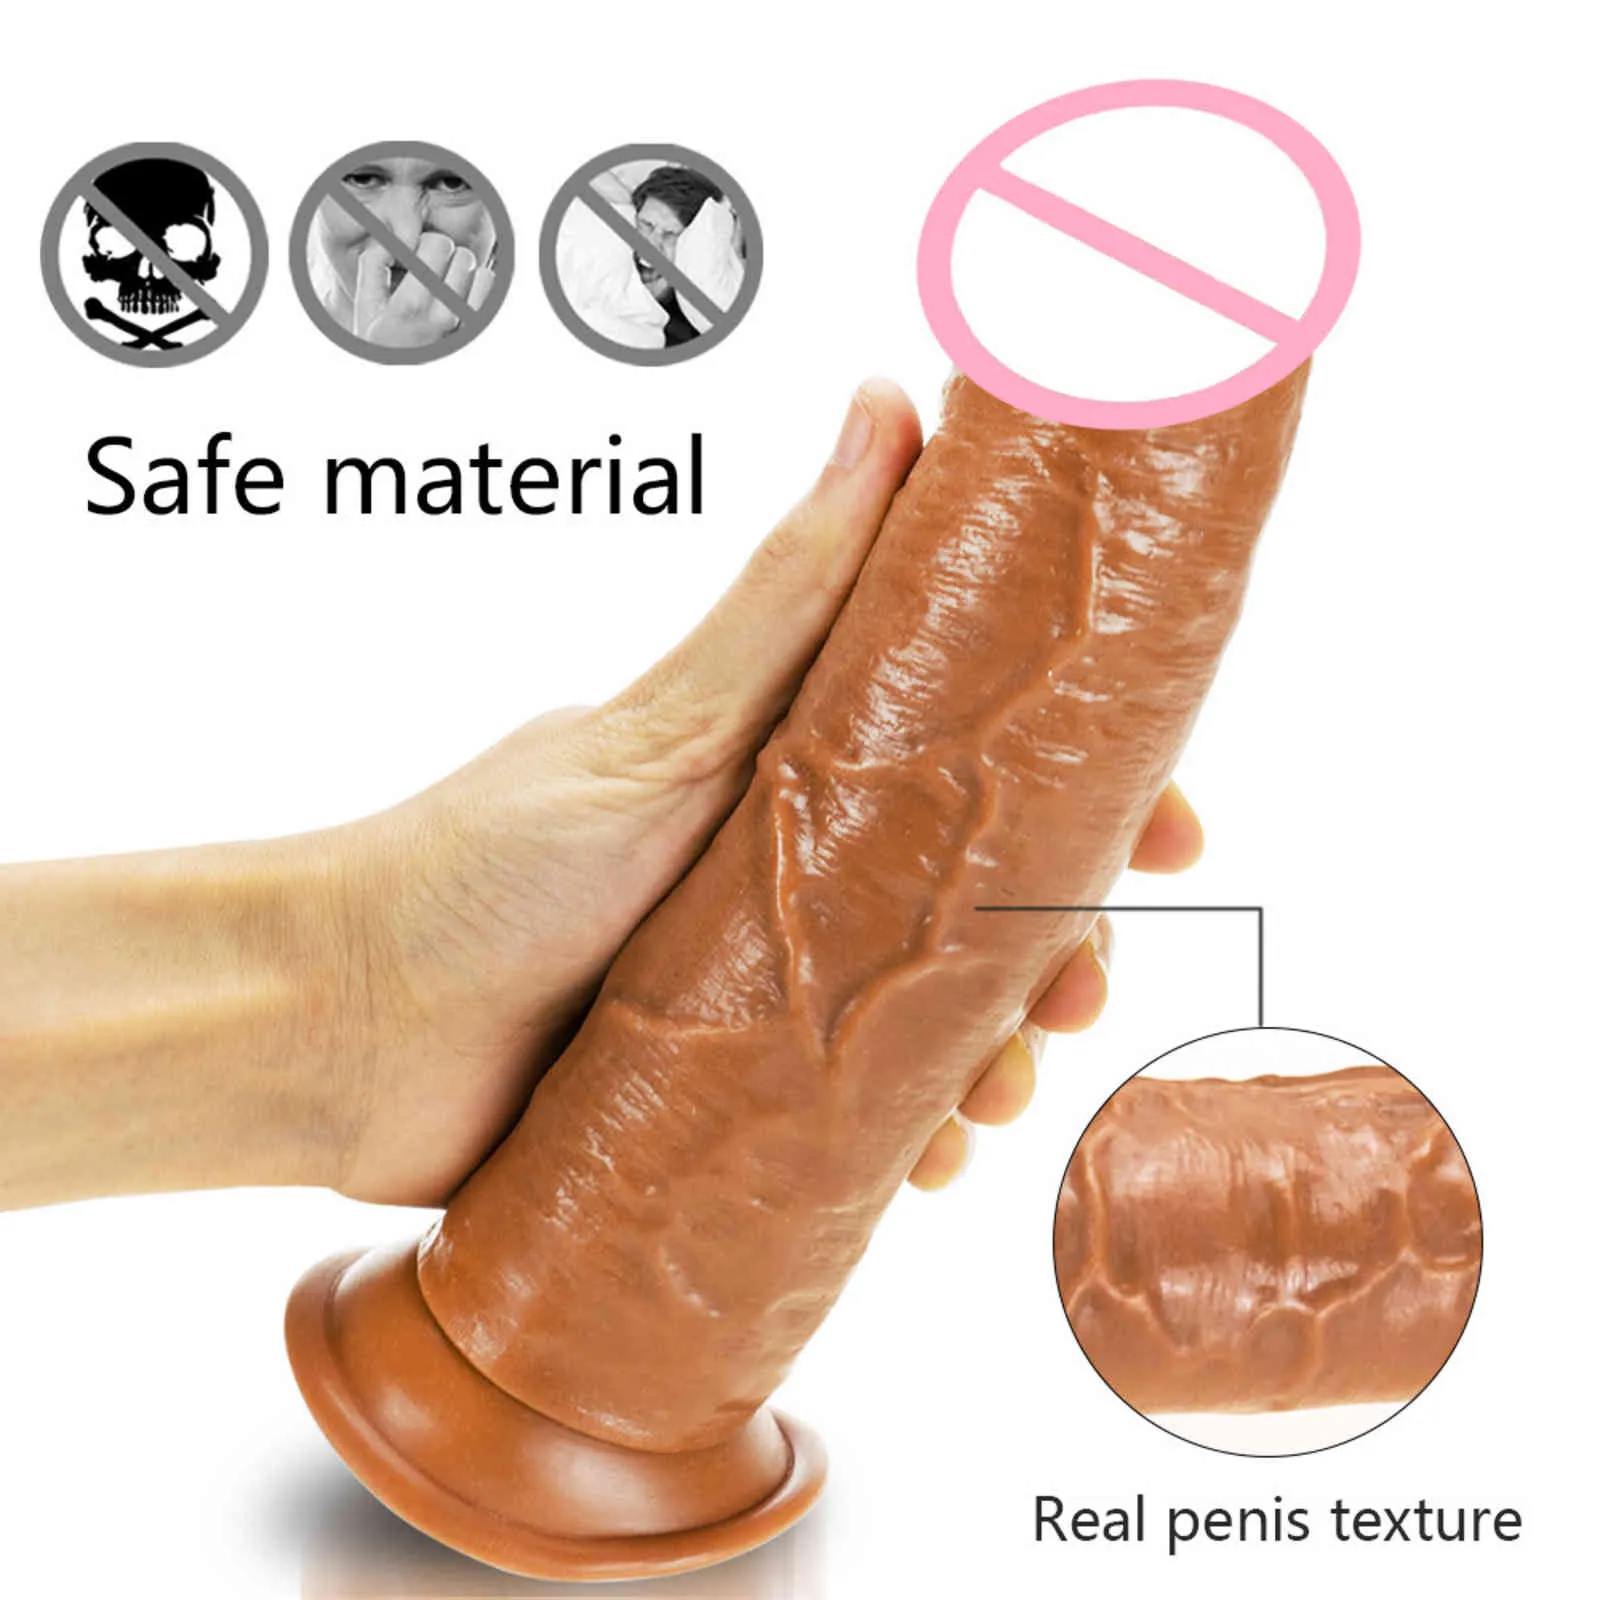 Realistyczne dildo straponu dla kobiet skóra uczucie ogromnych masturbatorów penisa żeńskie dildos pasek ssący kubek stymulacja stymulacja seks1648992